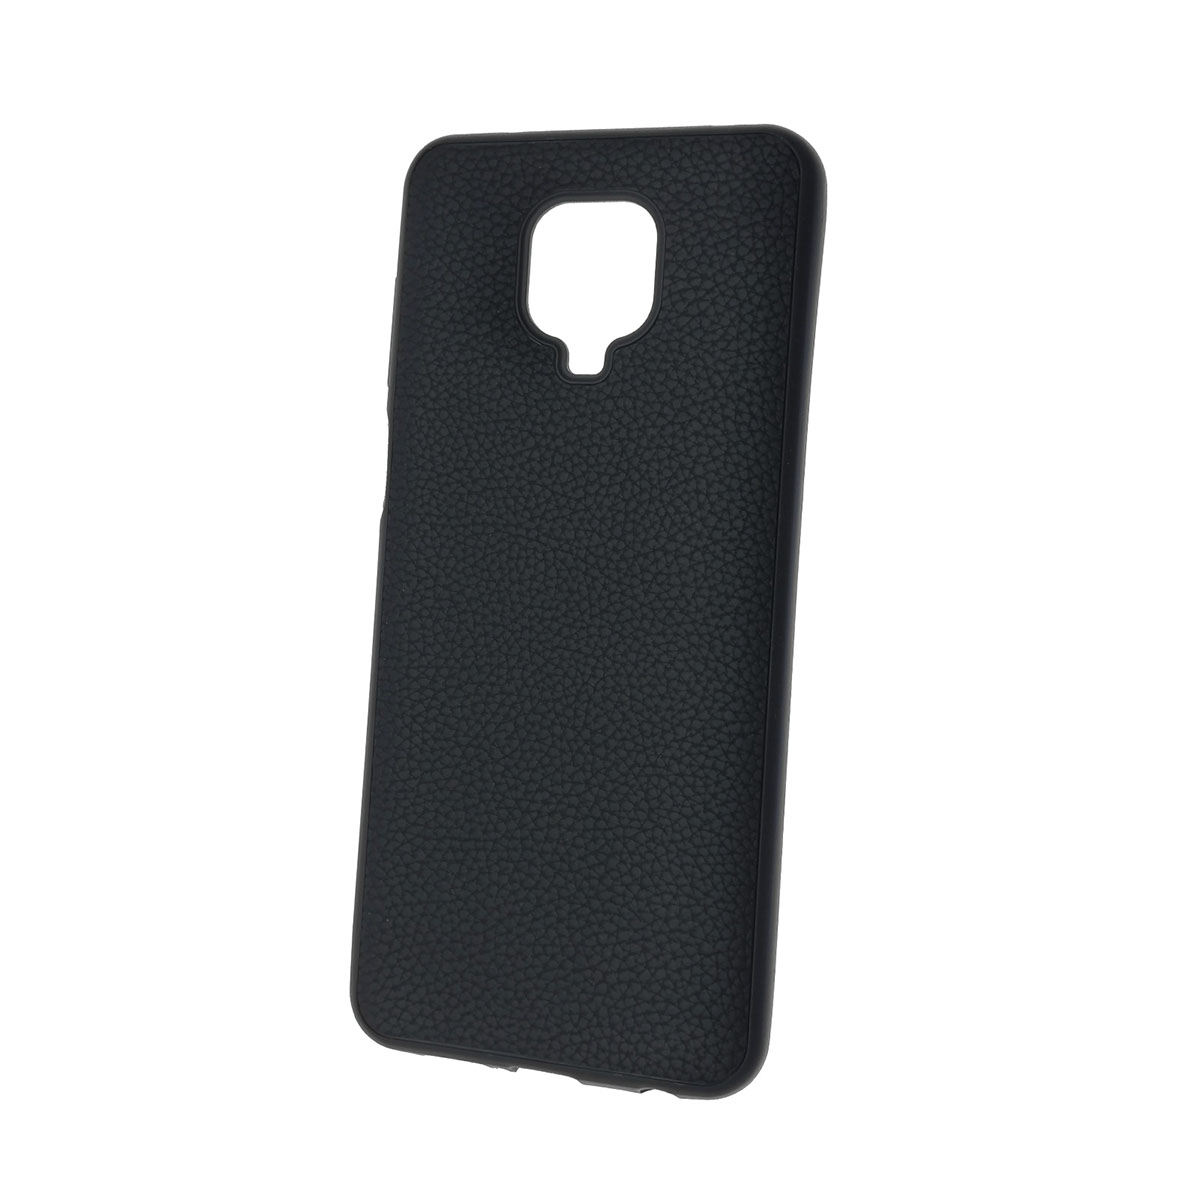 Чехол накладка для XIAOMI Redmi Note 9 Pro, Redmi Note 9S, силикон, под кожу, цвет черный.